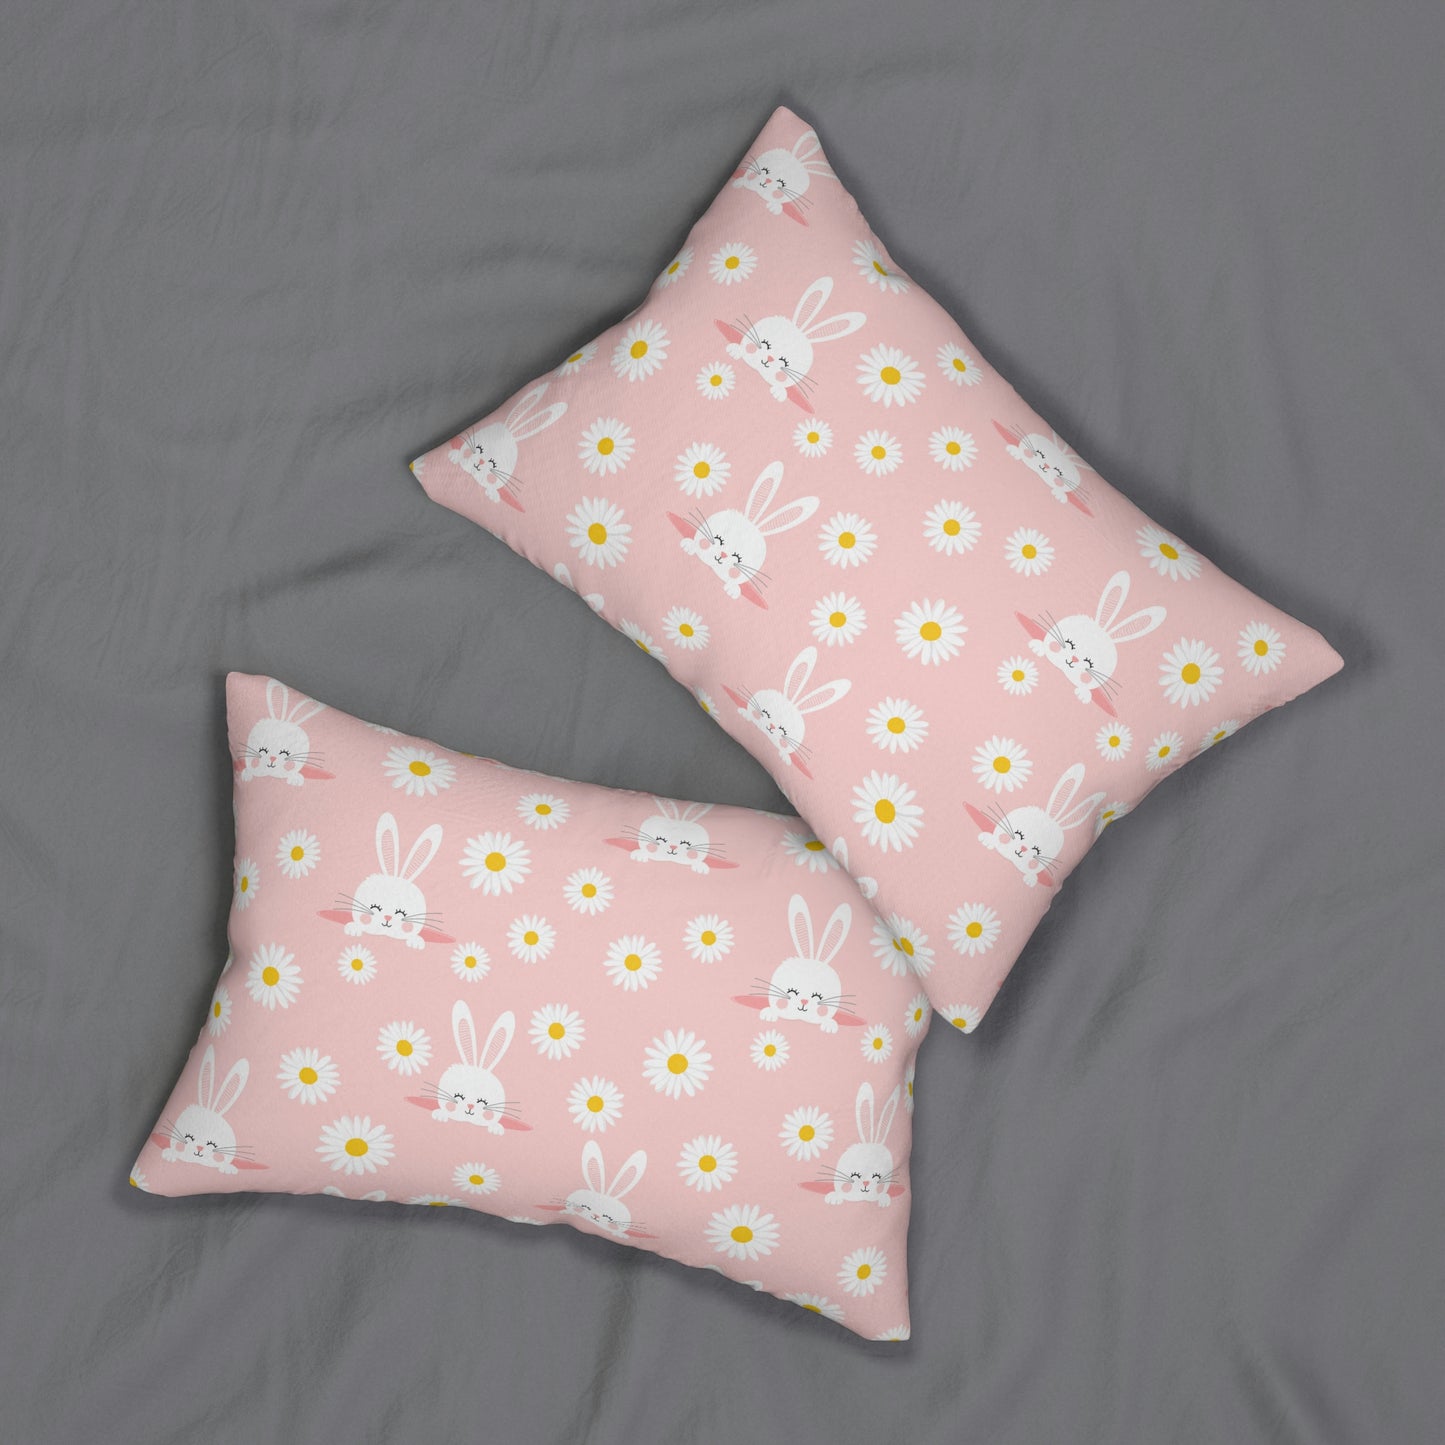 Smiling Bunnies and Daisies Spun Polyester Lumbar Pillow